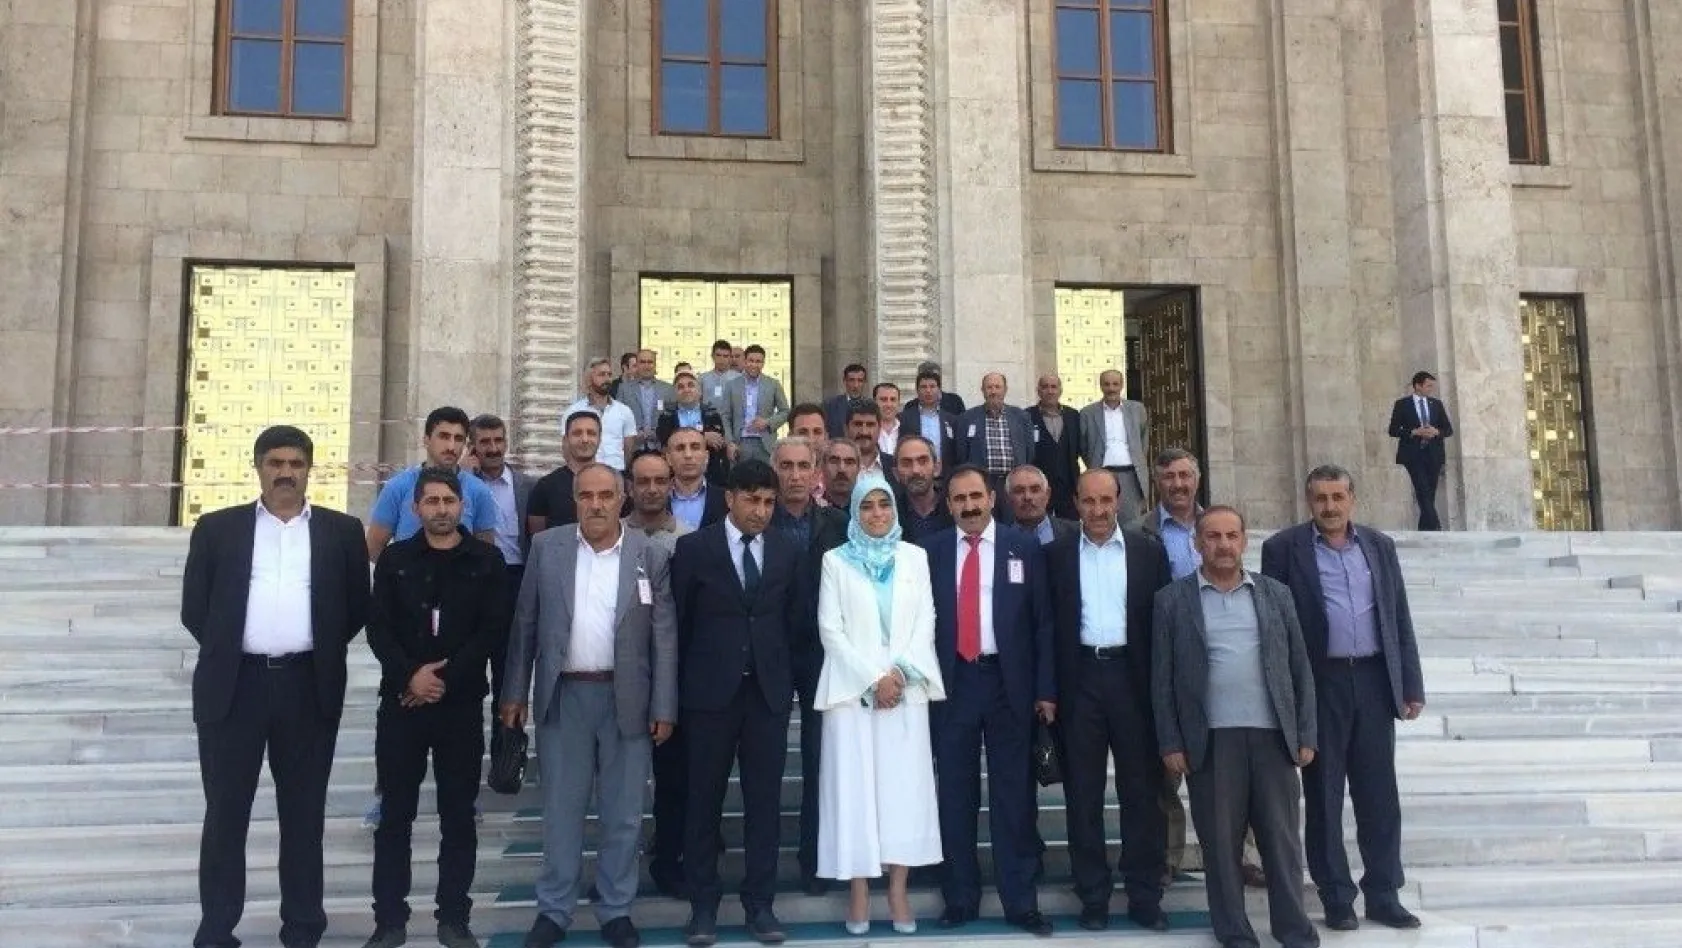 Tekmanlı esnaf, AK Parti Erzurum Milletvekili Zehra Taşkesenlioğlu'nu TBMM'de ziyaret etti
